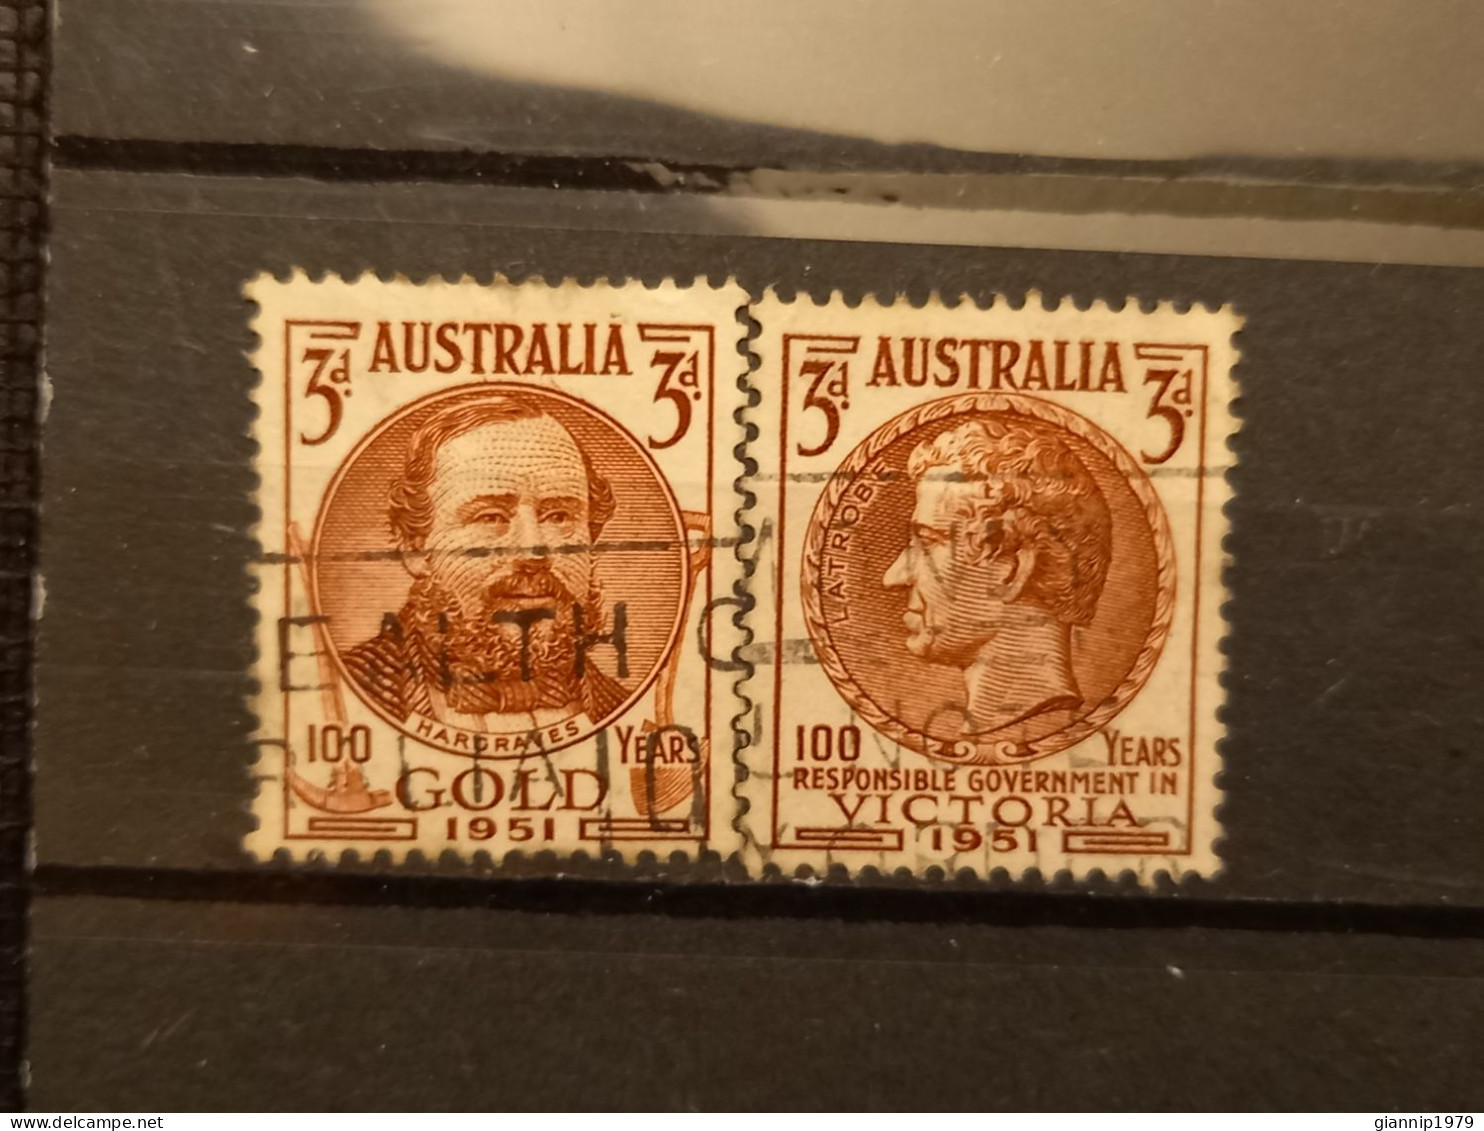 FRANCOBOLLI STAMPS AUSTRALIA AUSTRALIAN 1951 USED SERIE COMPLETE COMPLETA 100 ANNI ANNIVERSARY ORO VICTORIA OBLITERE' - Used Stamps